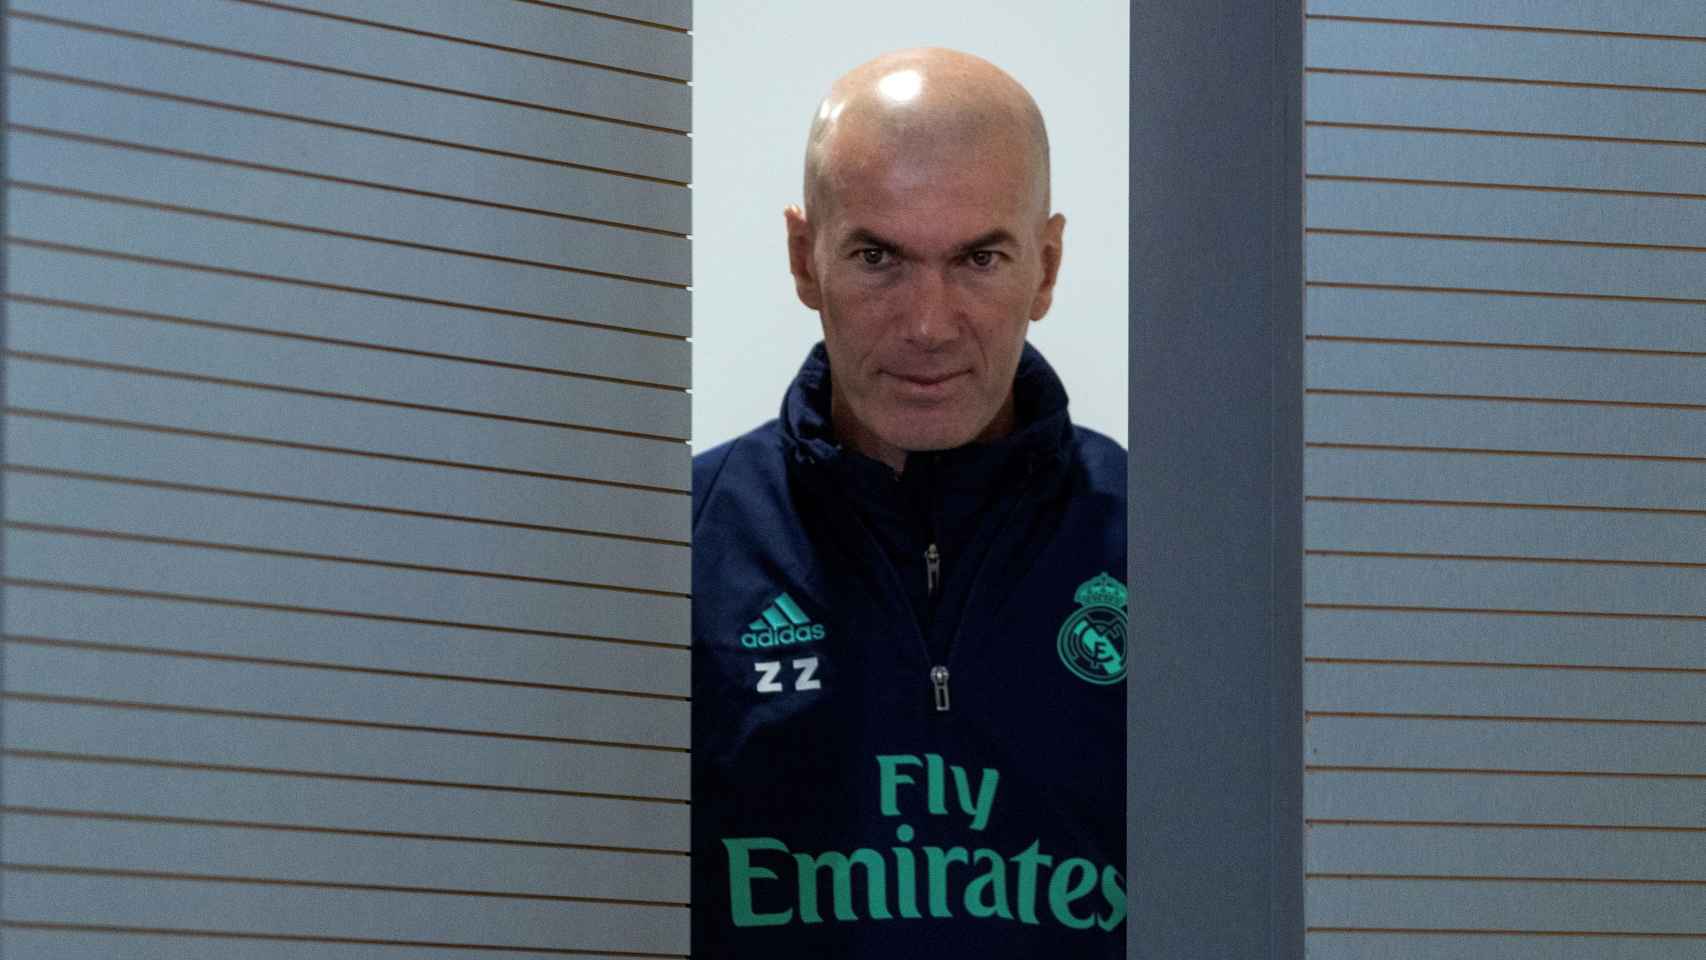 Zinedine Zidane, entrando en rueda de prensa